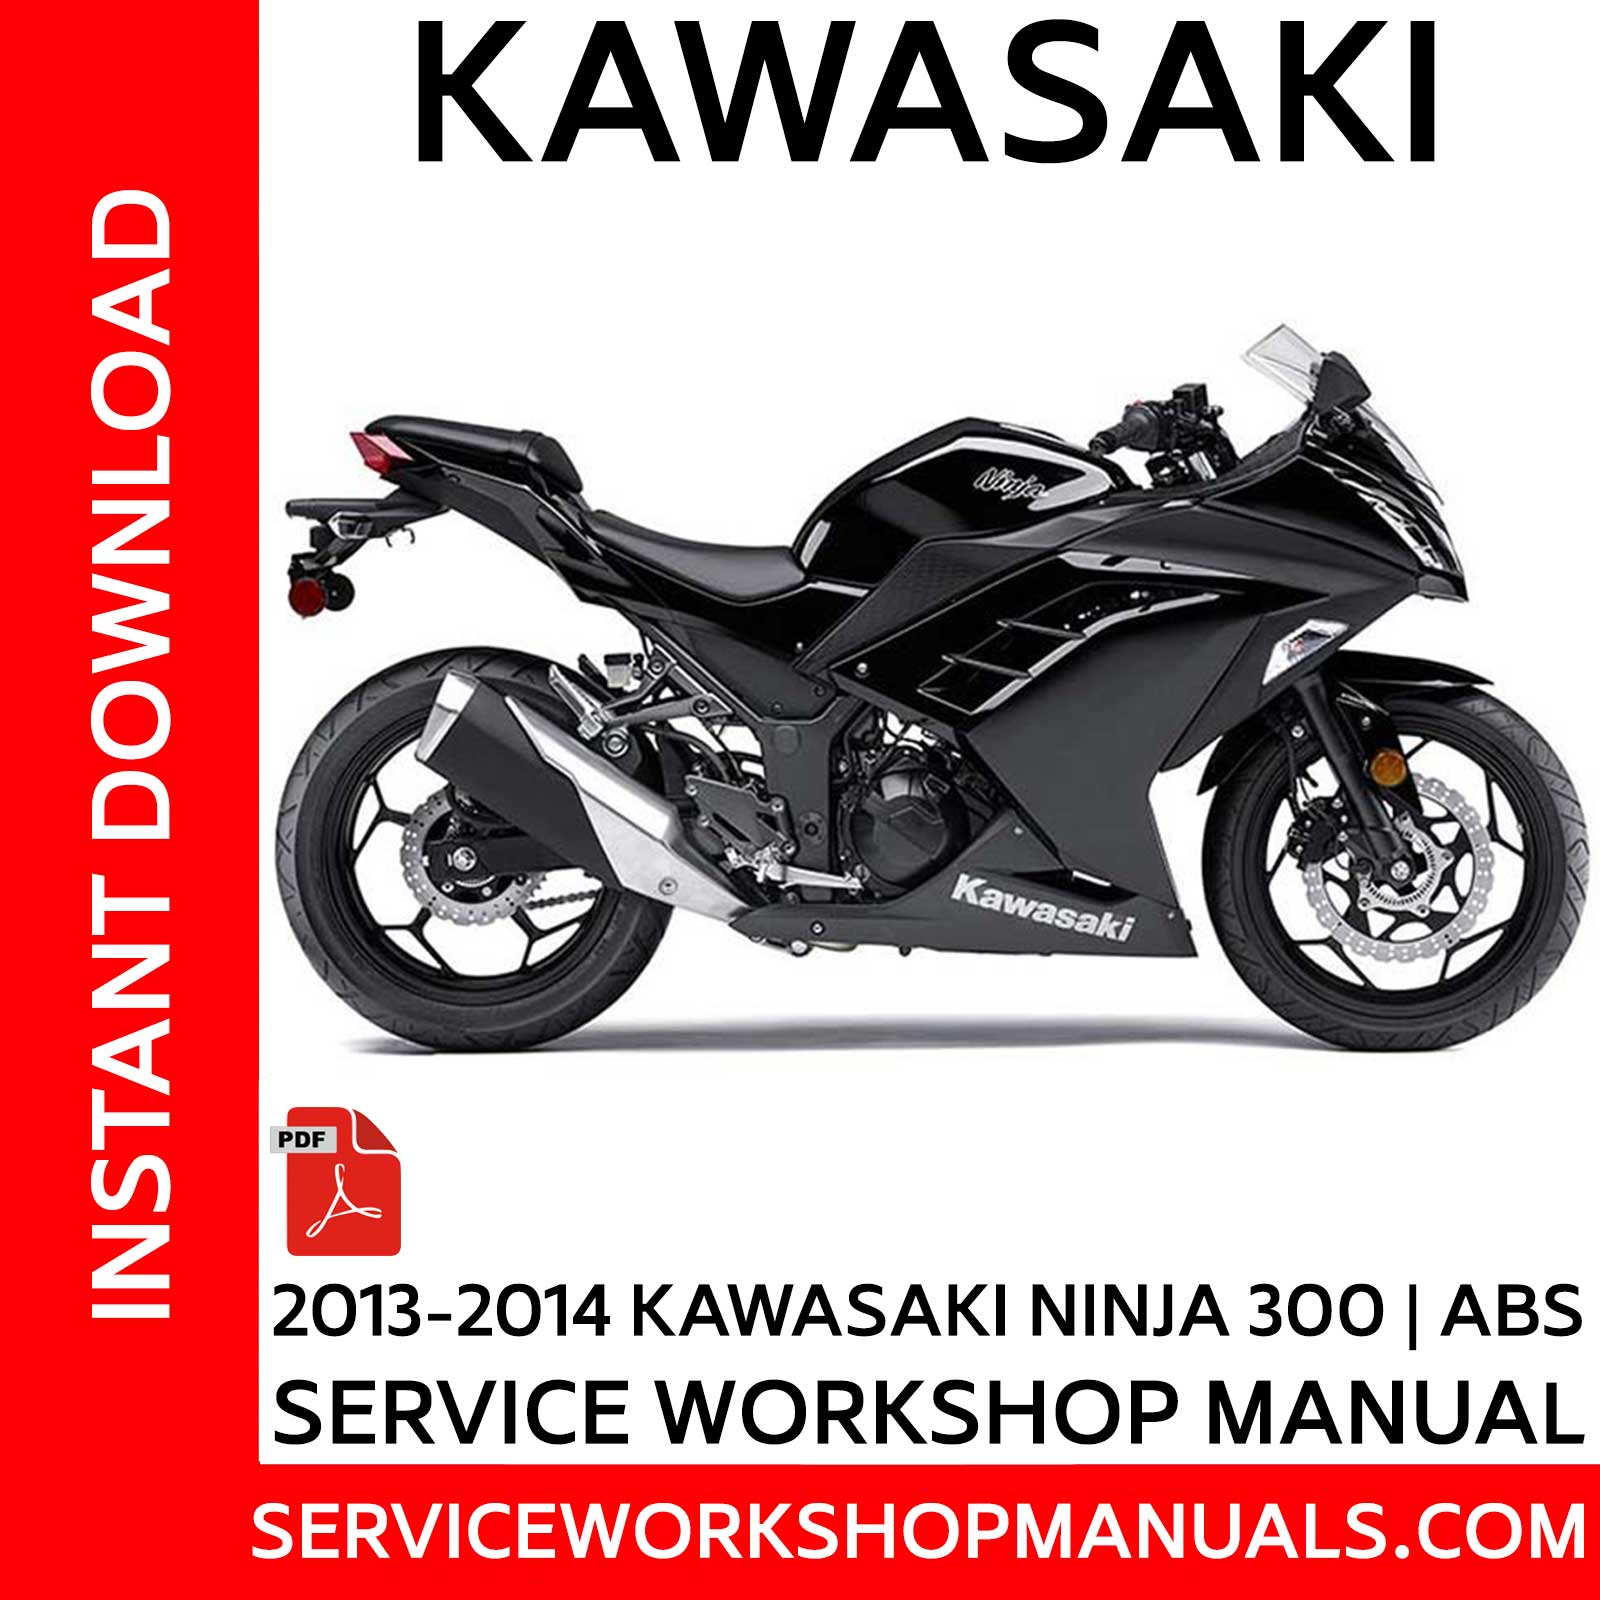 Ninja 300 | ABS 2013-2014 Service Workshop Manual - Service Workshop Manuals